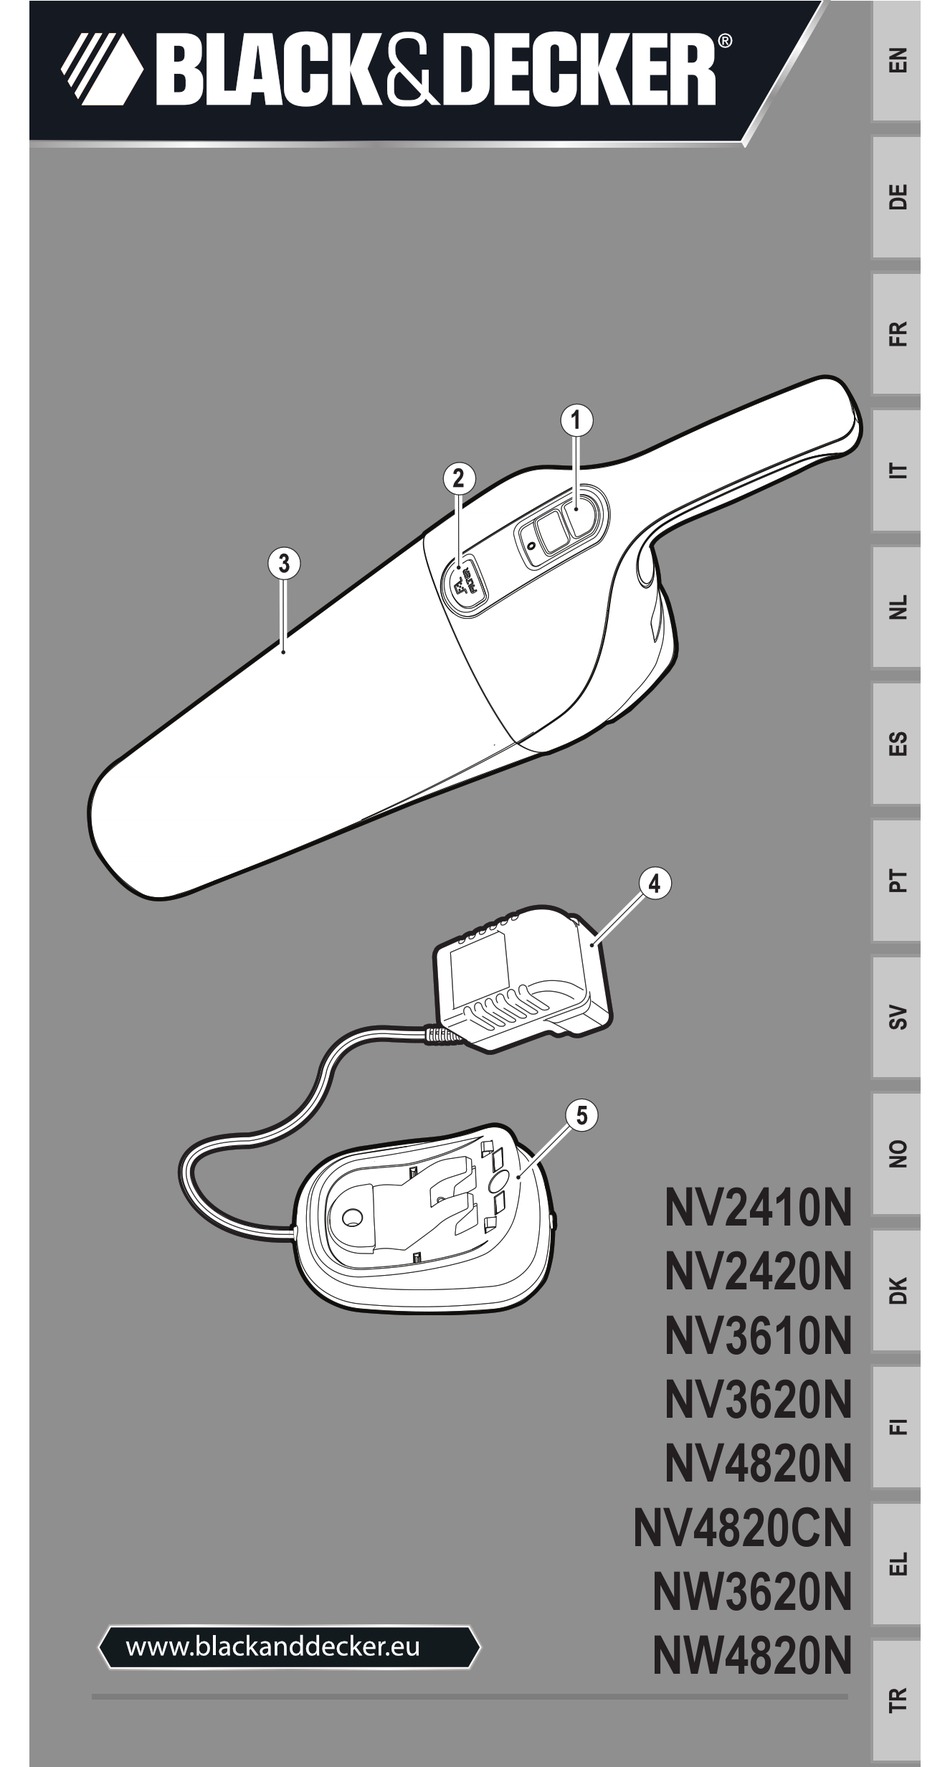 Black & Decker caricatore carica batterie alimentatore base 4.8V NV4820CN